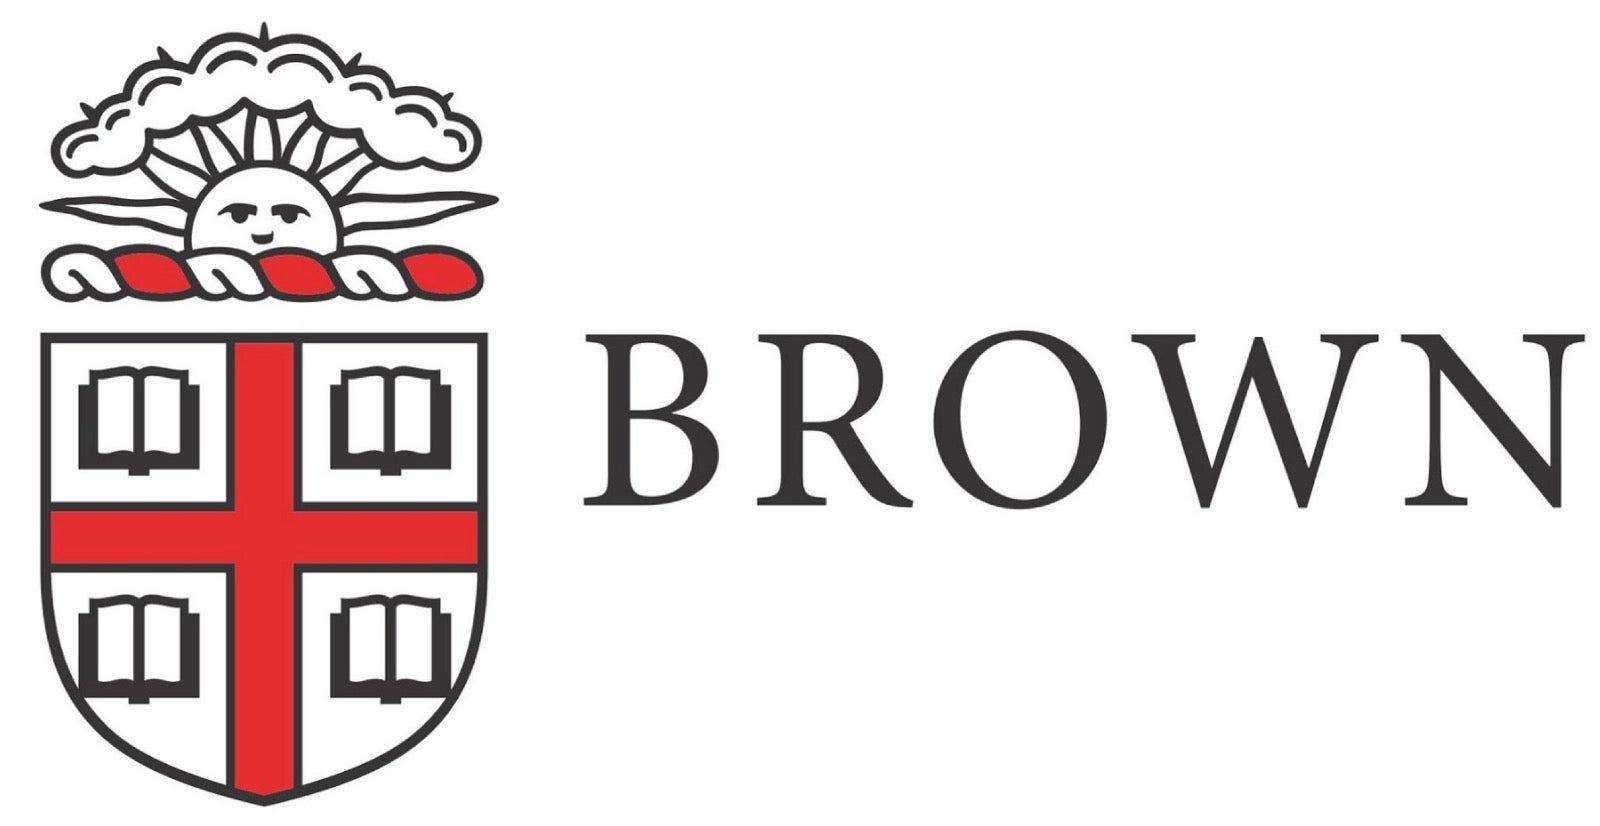 brown-logo